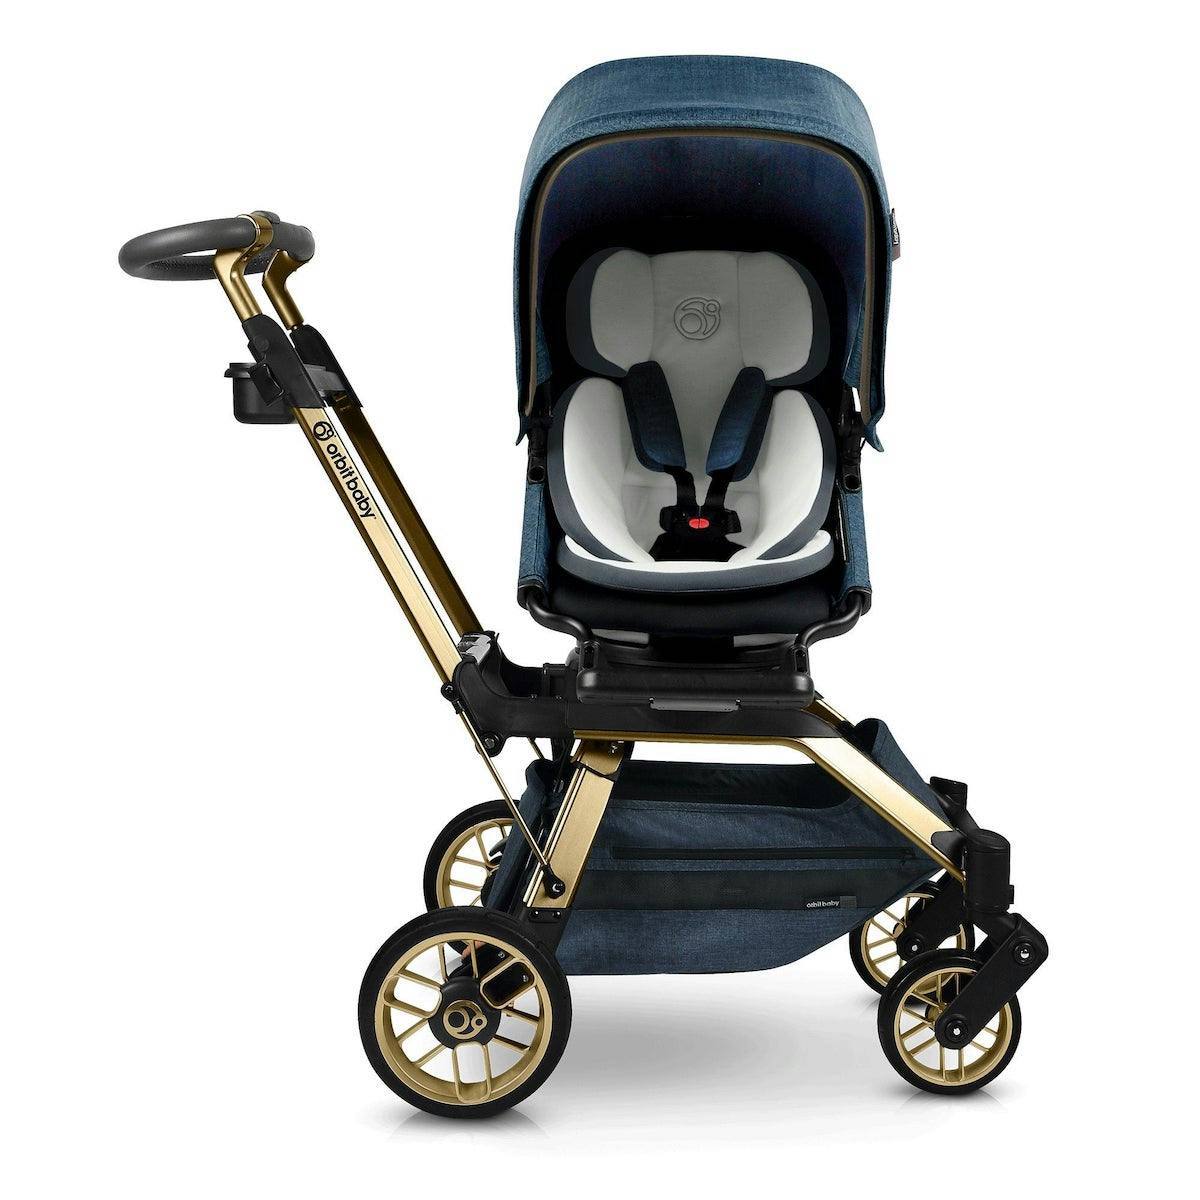 Orbit Baby G5 Stroller · Gold / Melange Navy